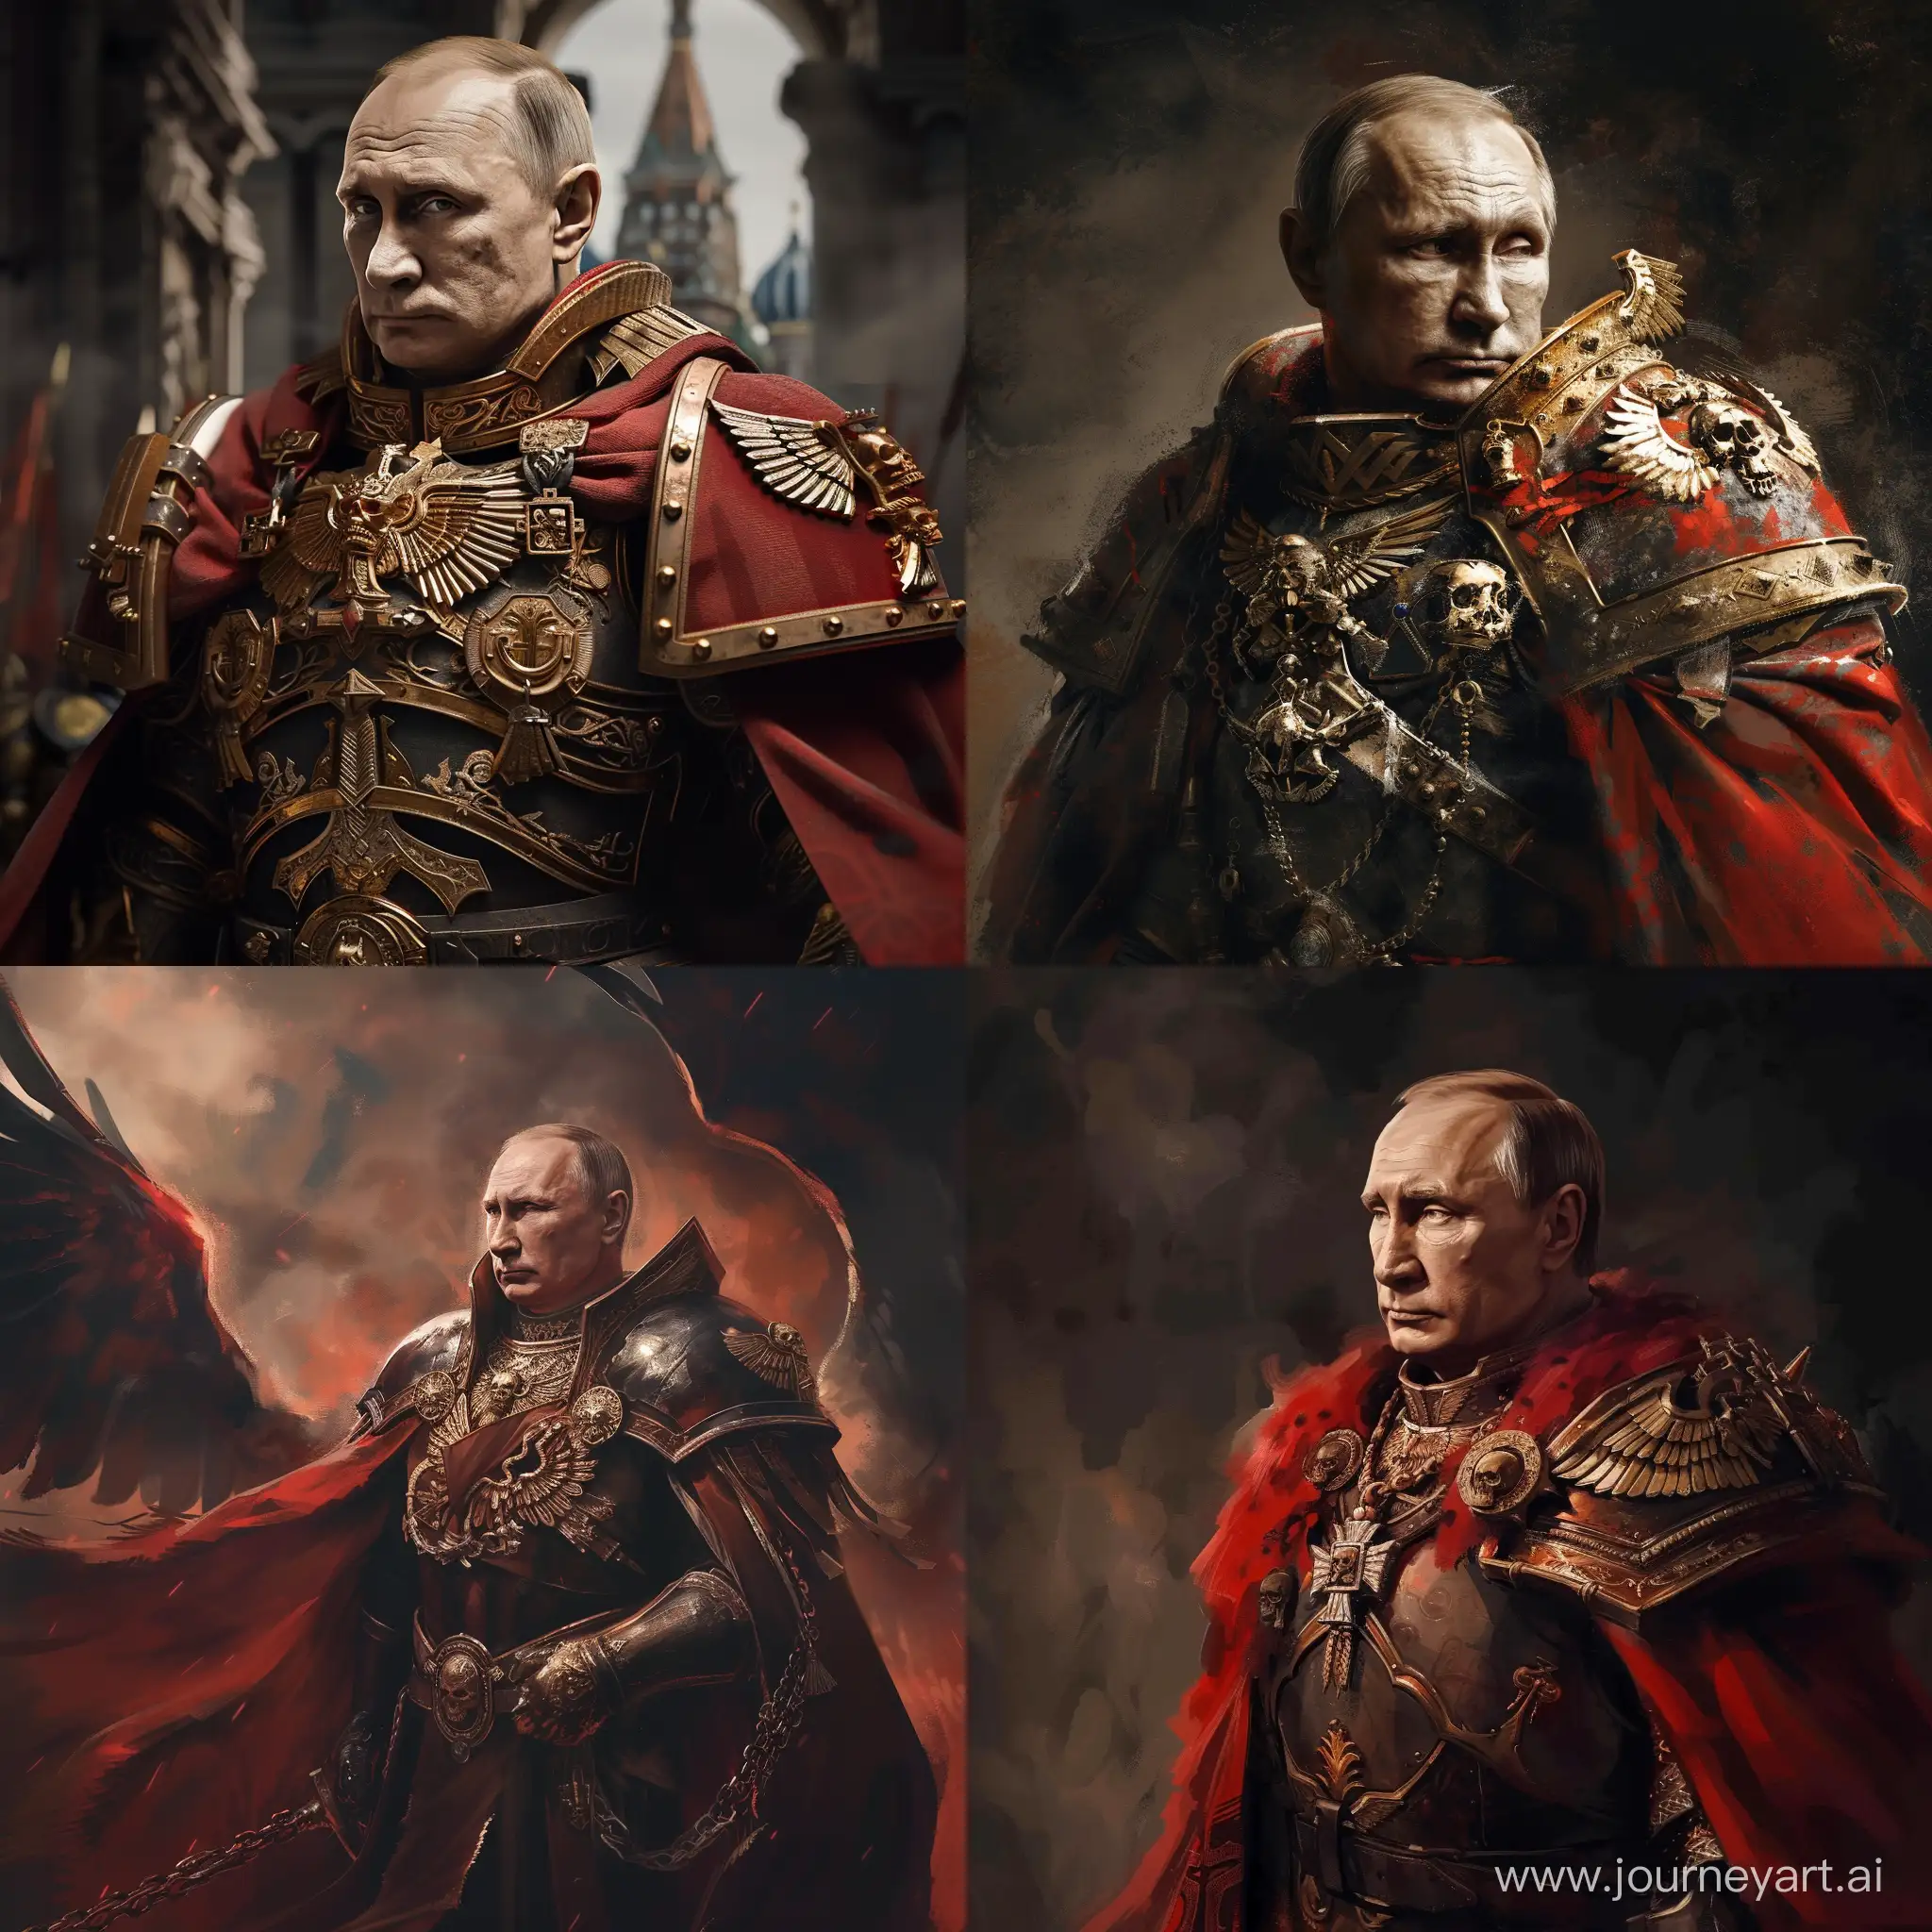 Vladimir Putin as god imperator from Warhammer universe 